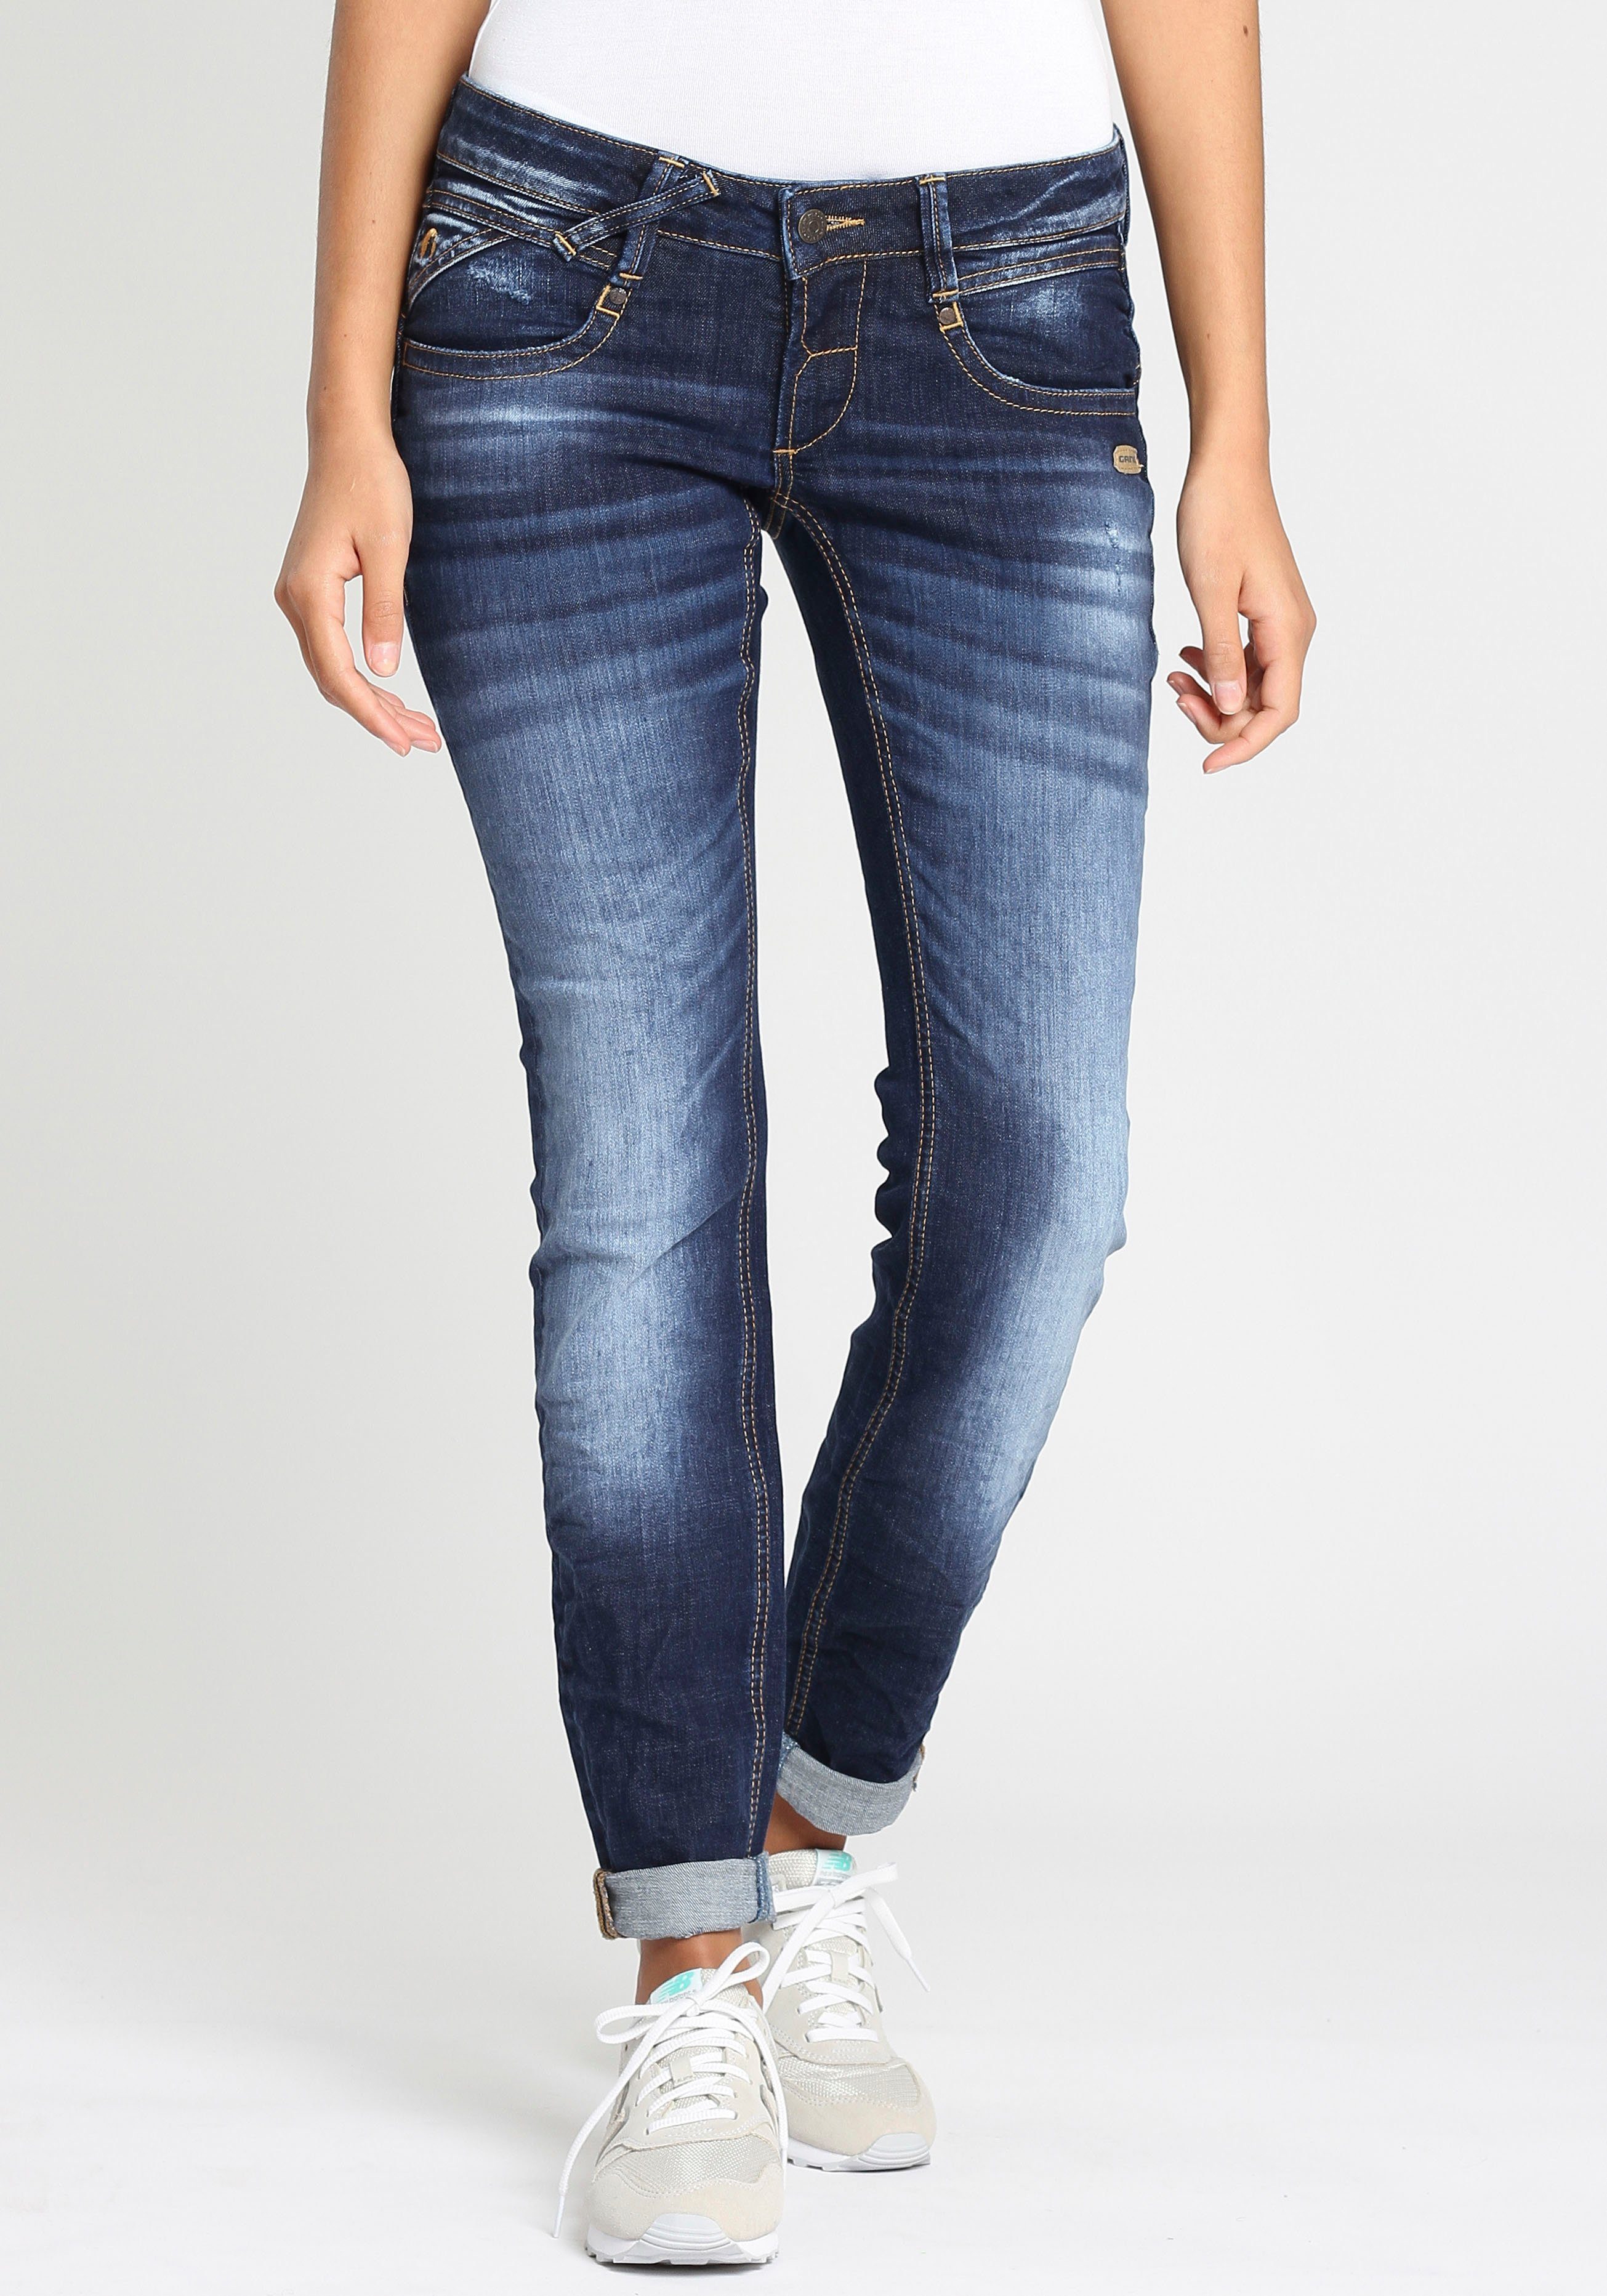 GANG Damen Jeans online kaufen | OTTO